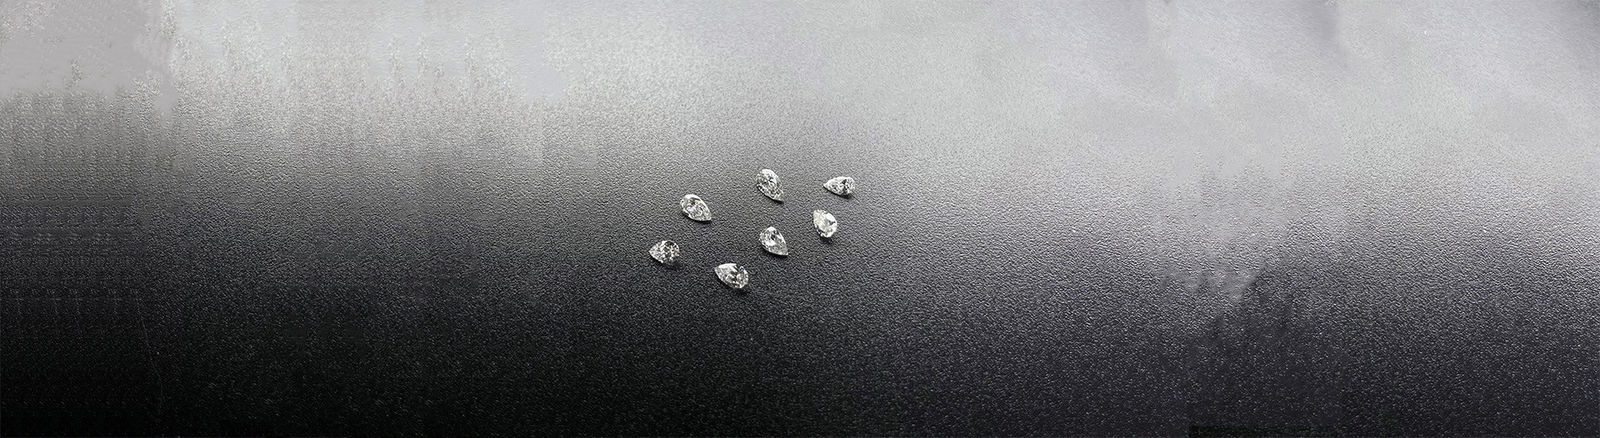 証明された実験室の育てられたダイヤモンド